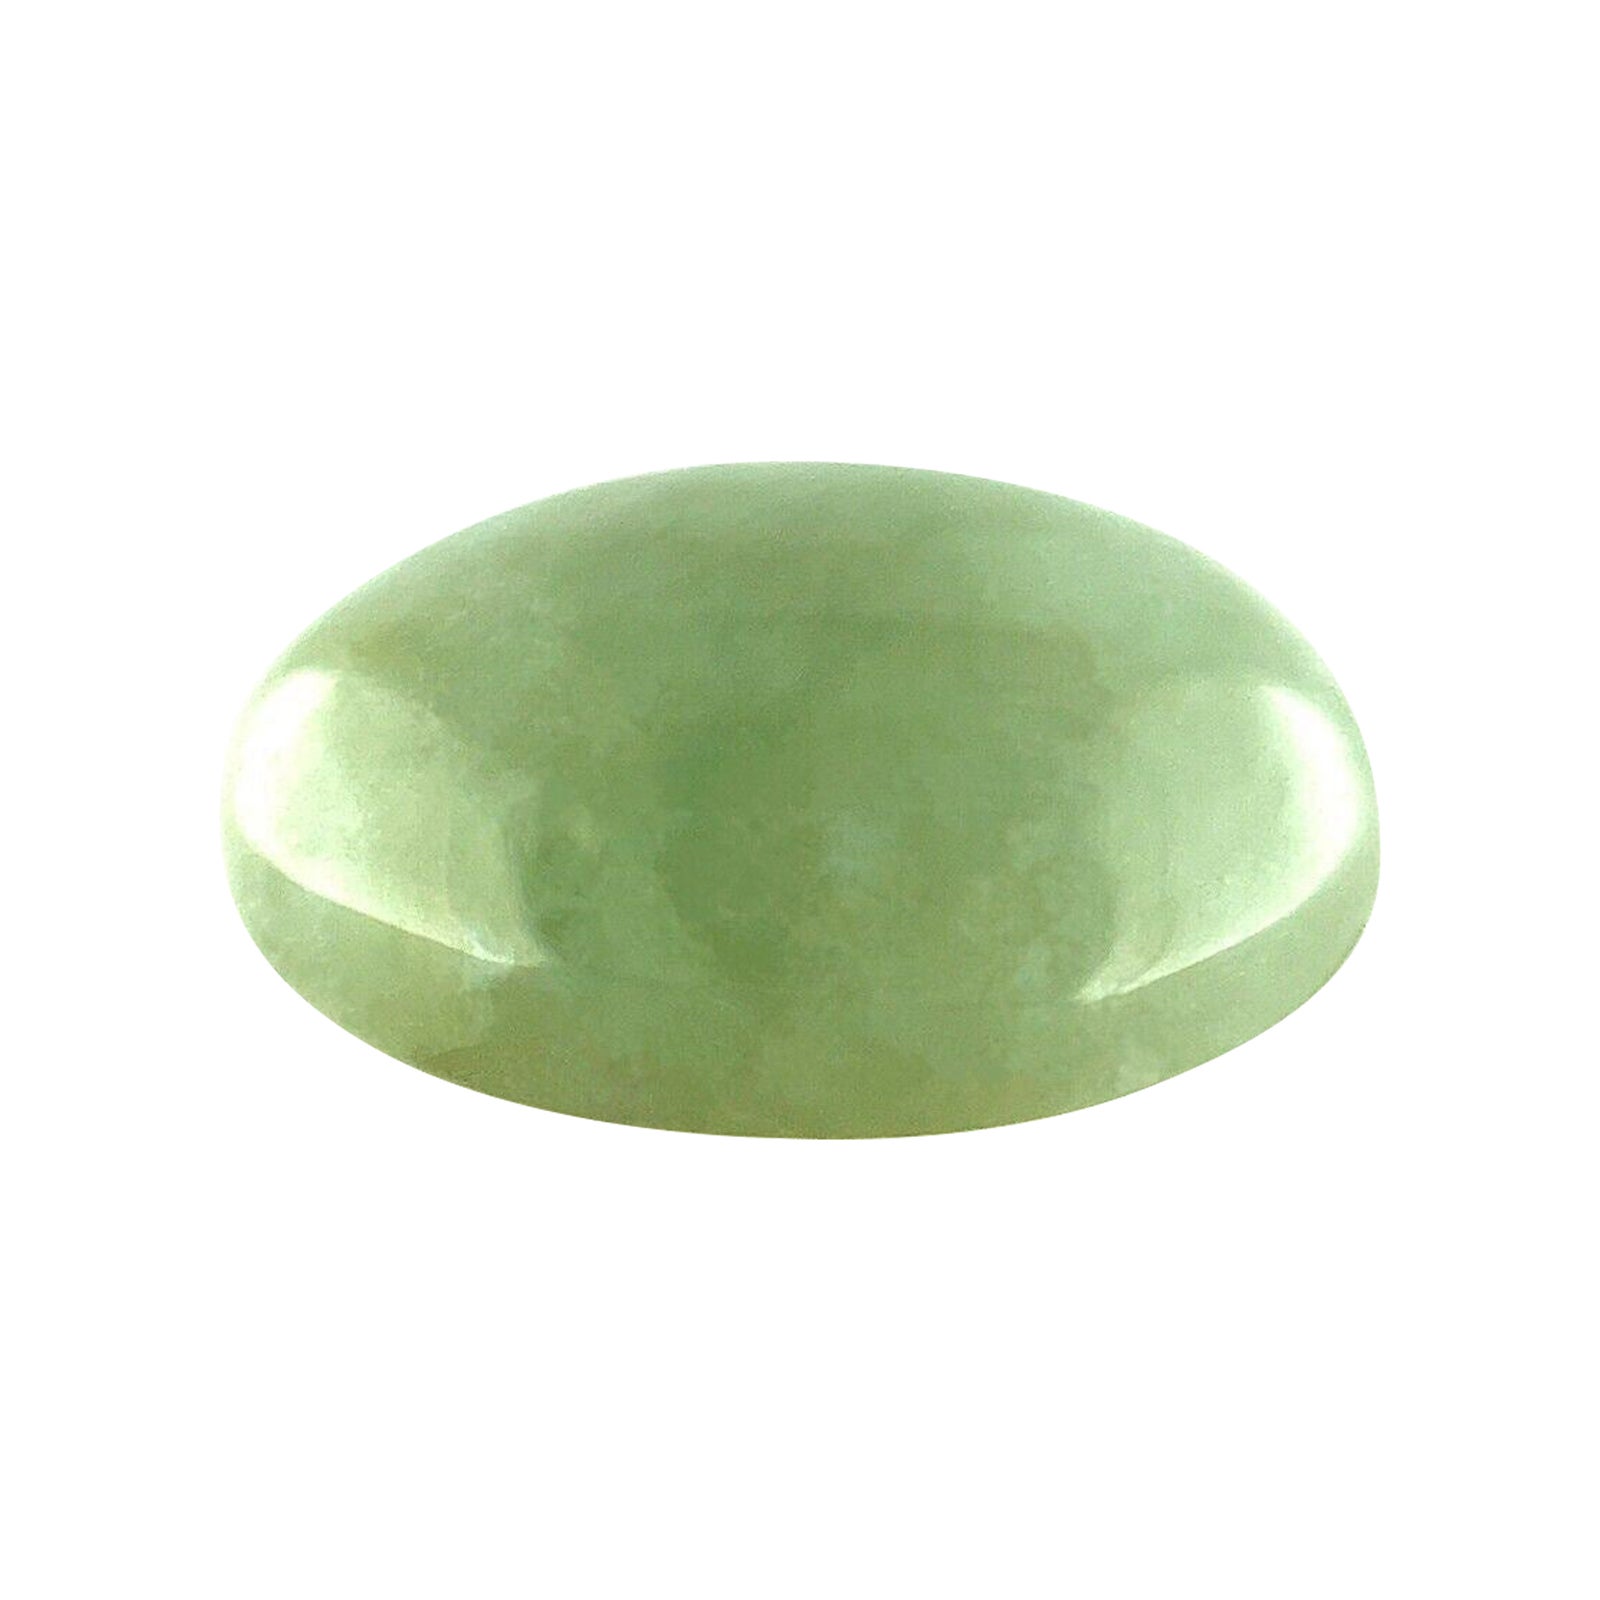 Cabochon ovale en jadéite verte grise de 8,10 carats, certifié par le GIA, de qualité 'A'.